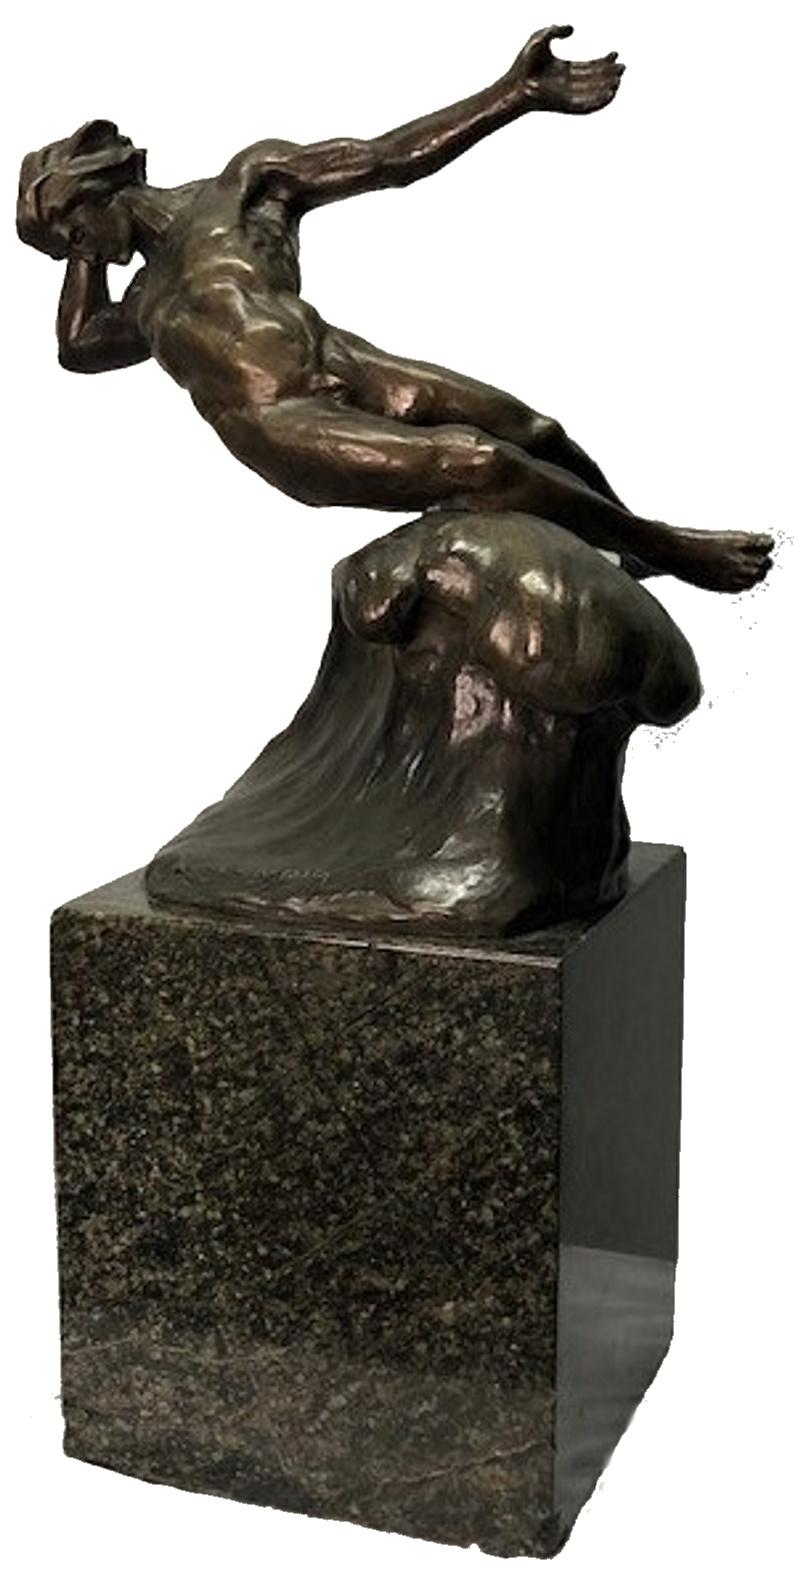 A PROPOS DE L'ARTISTE
Malheureusement, il n'existe que peu d'informations biographiques sur l'auteur de cette merveilleuse sculpture. Jacobus Nicolaus Sandig (Néerlandais, 1876 - 1933) était actif et vivait aux Pays-Bas, et est connu pour ses